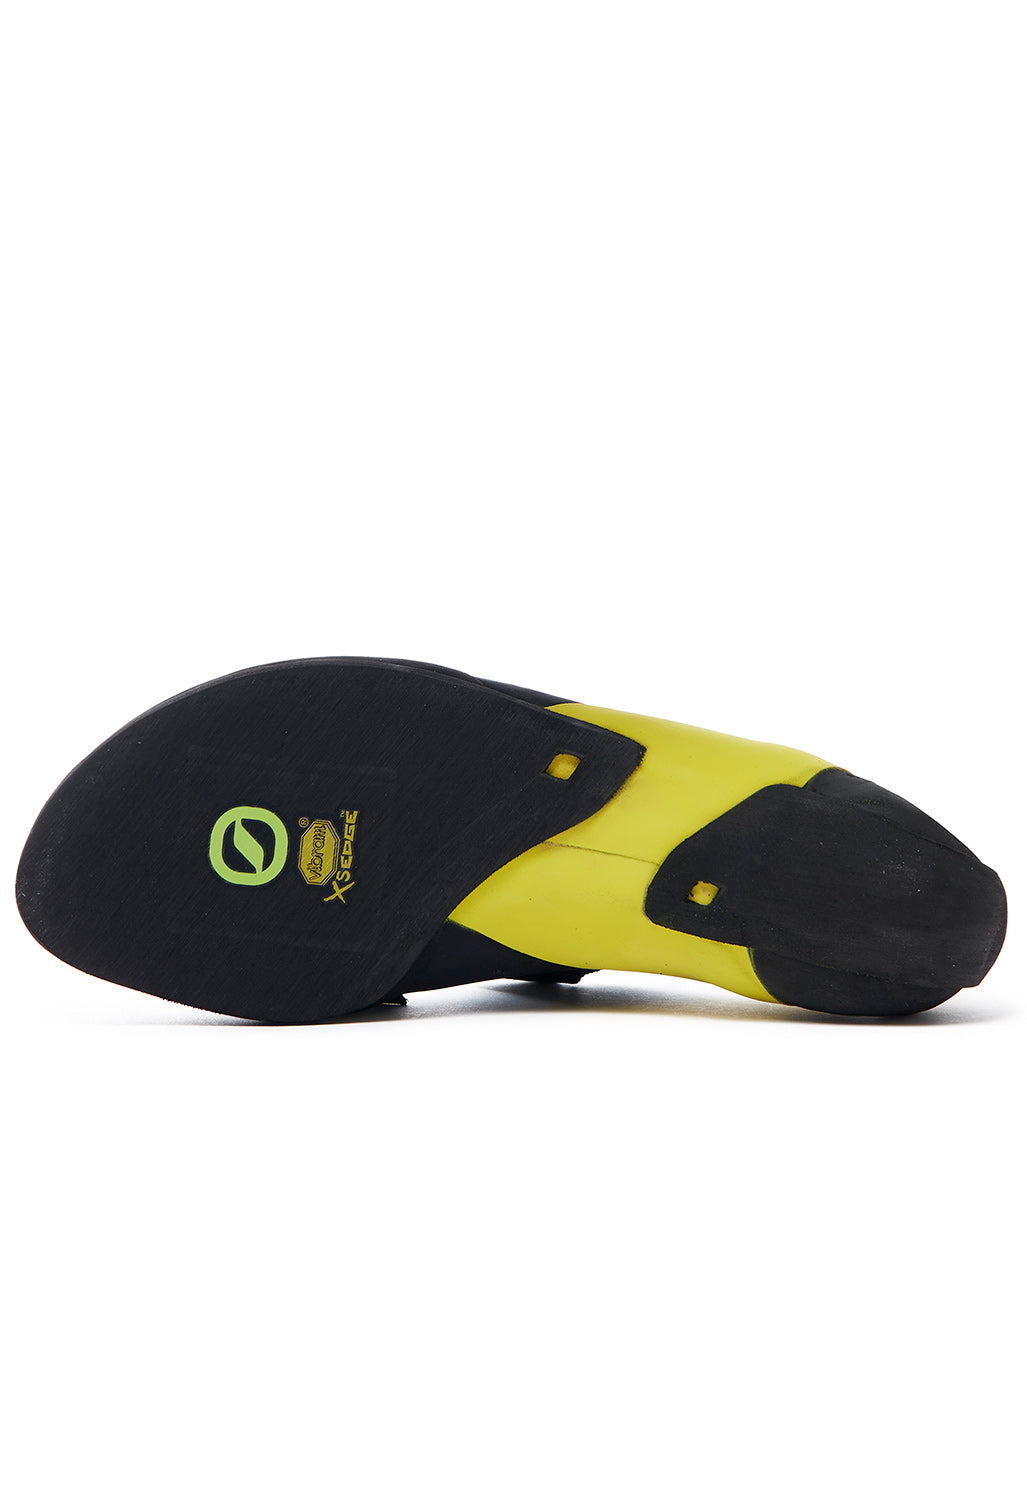 Scarpa Vapour V Men's Shoes - Ocean/Yellow